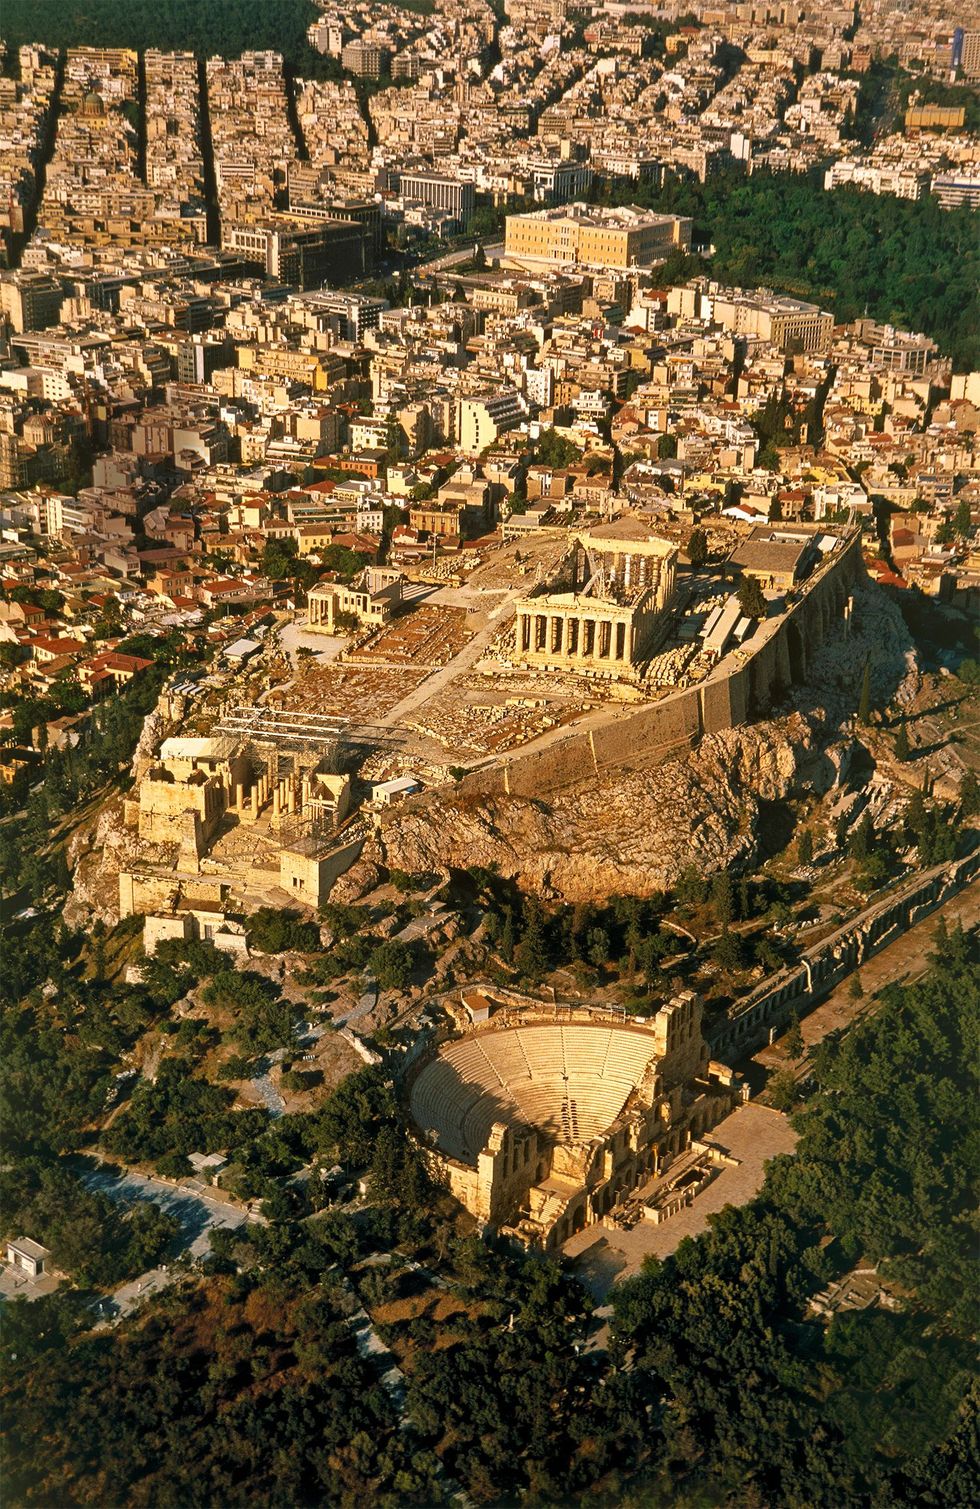 Na de verbanning van Hippias streed Isagoras tegen Cleisthenes Met hulp van Sparta wilde hij de macht veroveren Na een beleg op de Akropolis werd Isagoras verbannen naar Sparta